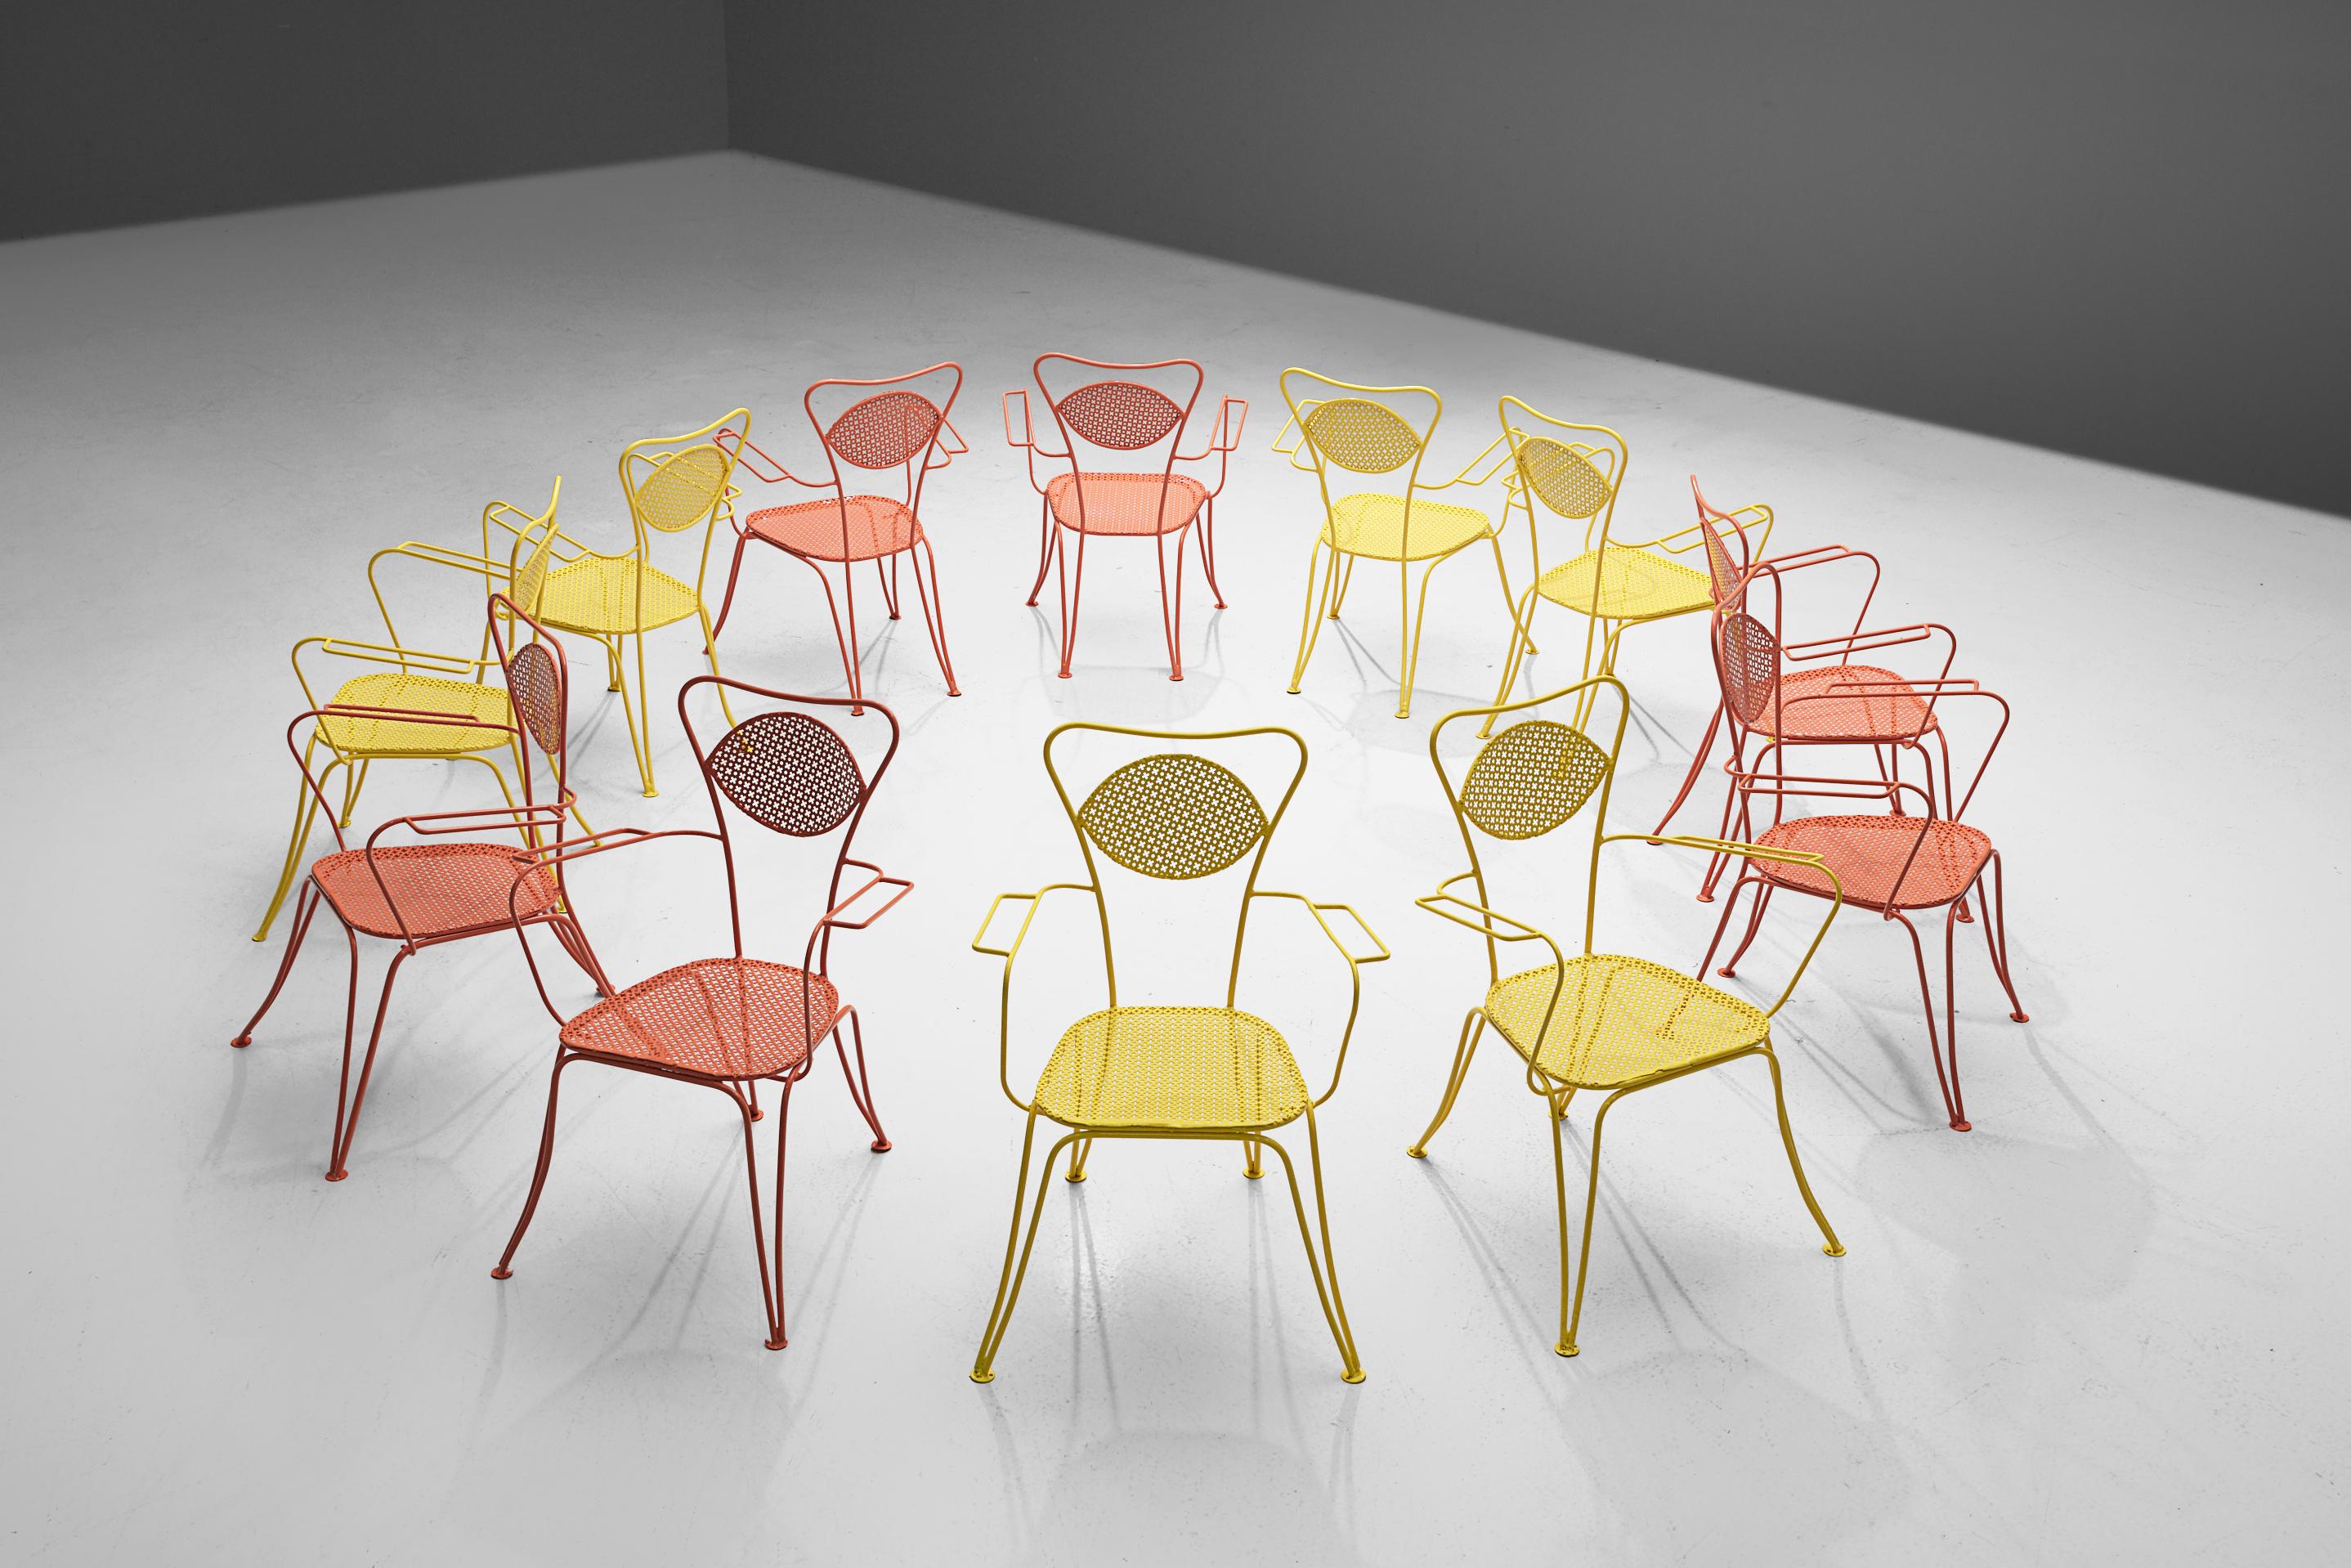 Esszimmerstühle oder Stühle für den Außenbereich, lackiertes Metall, Italien, 1960er Jahre

Wunderbar luftige Terrassen- oder Esszimmerstühle aus verschiedenfarbigem Metall. Was diese Stühle so leicht erscheinen lässt, sind die dünnen Linien des